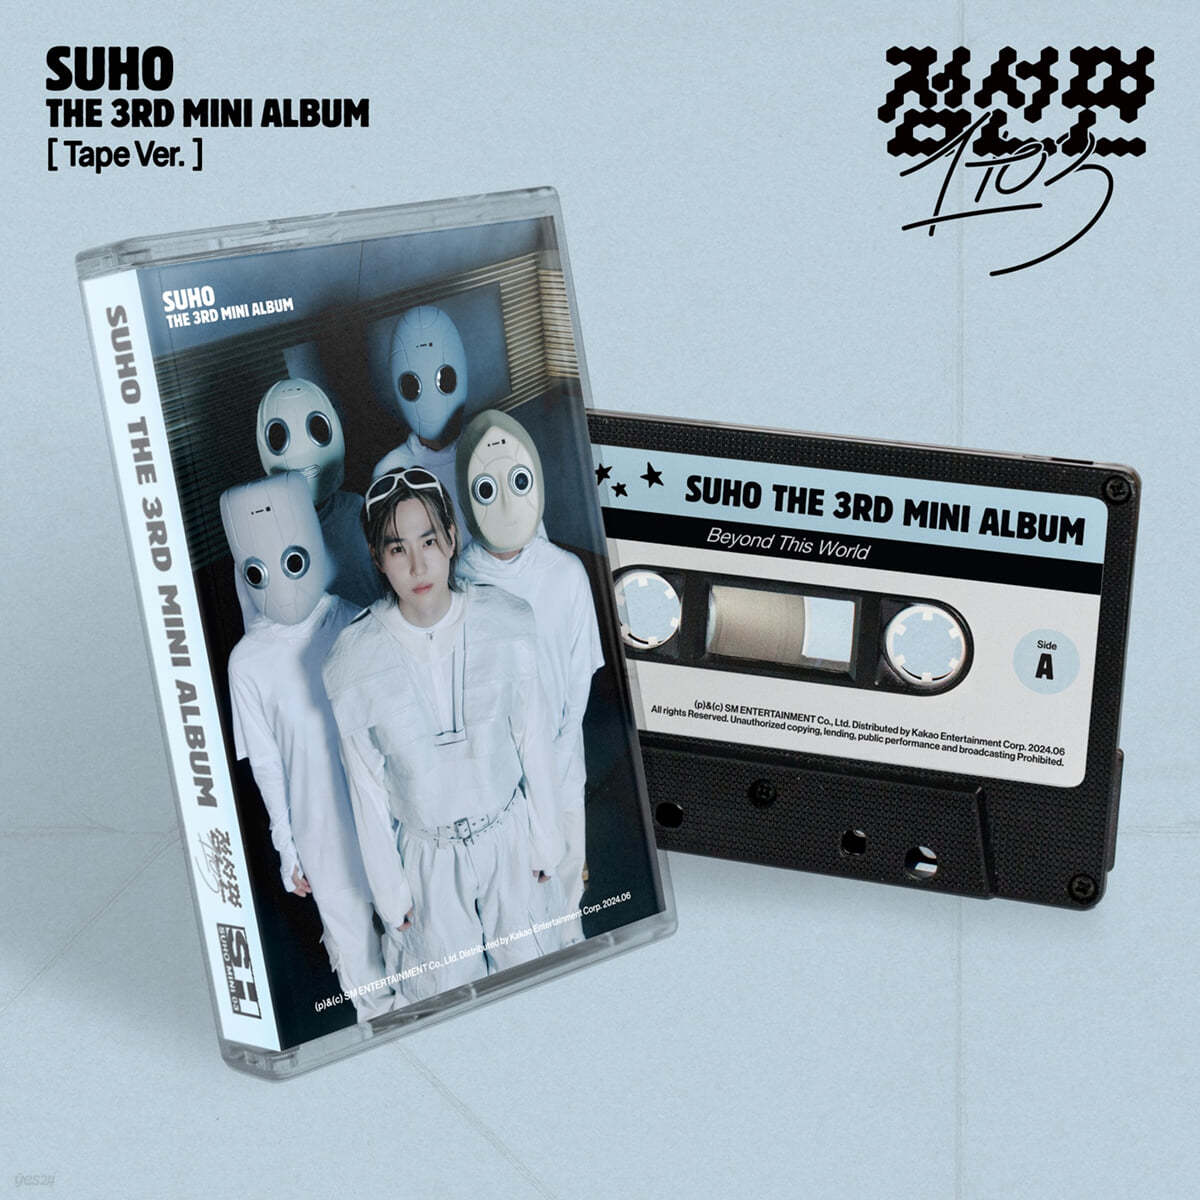 수호 (SUHO) - 미니앨범 3집 : 점선면 (1 to 3) [Tape Ver.]